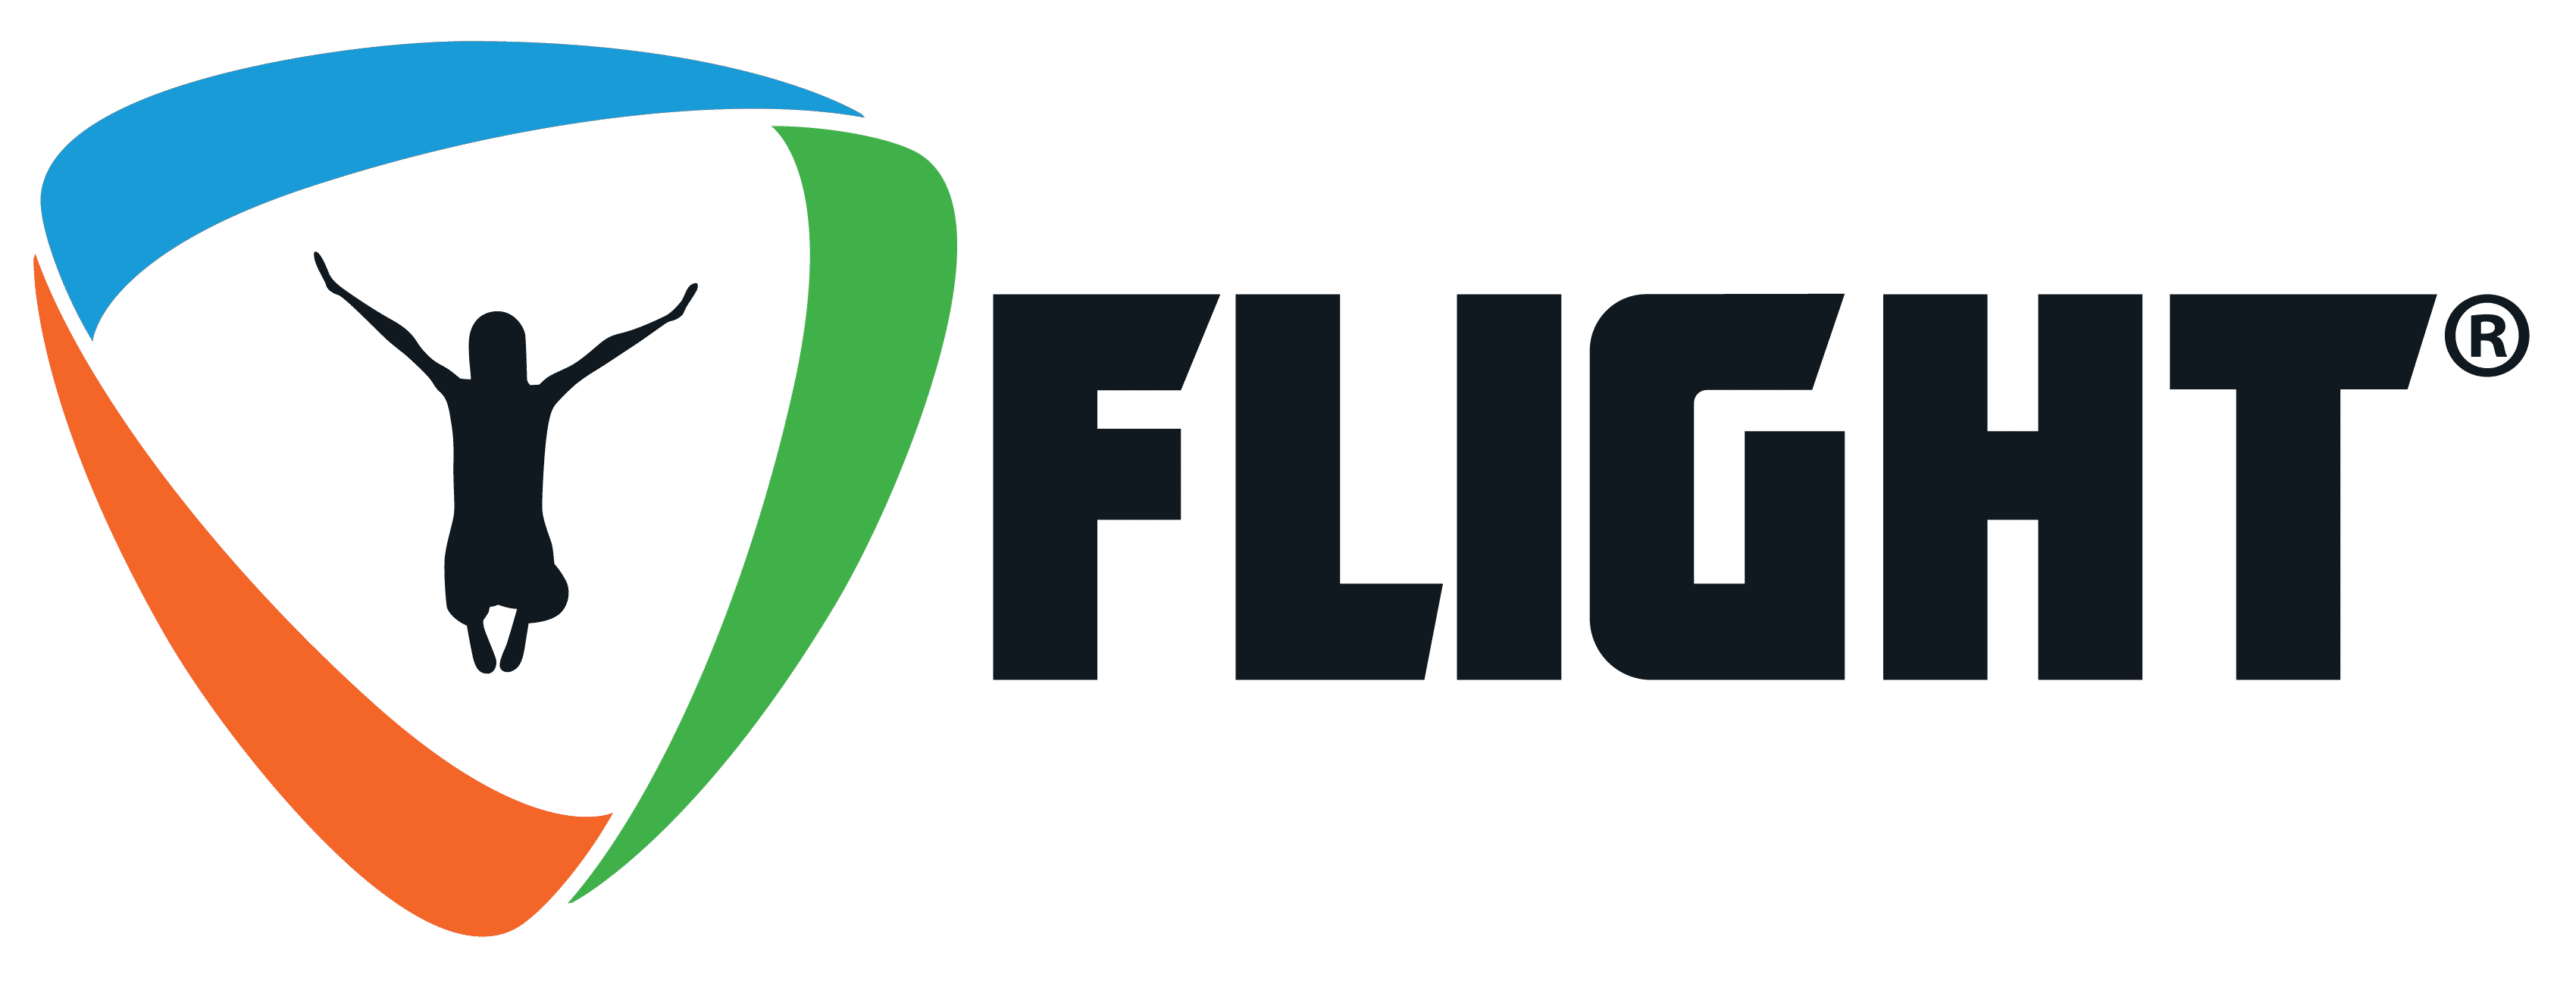 logo | Flight Adventure Park